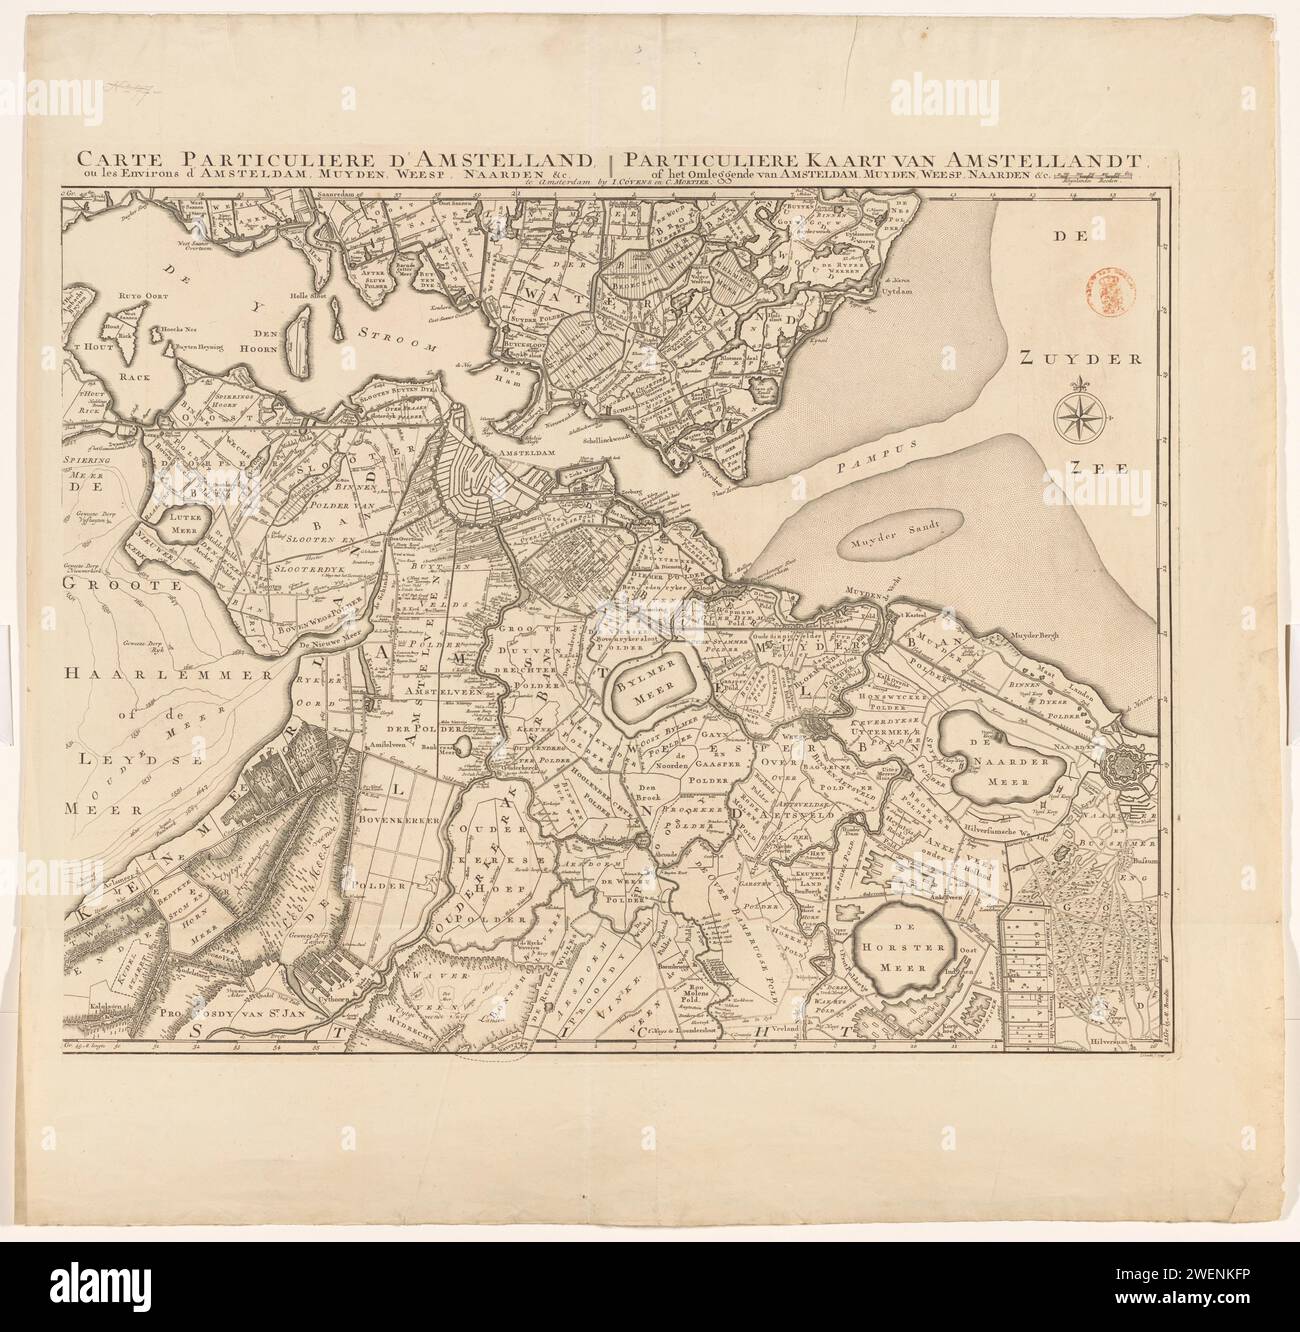 Mappa di Amstelland, Johannes Condet, 1749 stampa in alto a destra una ciotola: Rhynandse Rods. Distribuzione in gradi lungo i bordi. Orientamento: nord sulla destra. Mappe cartacee per incisioni di paesi o regioni diversi Amstelland Foto Stock